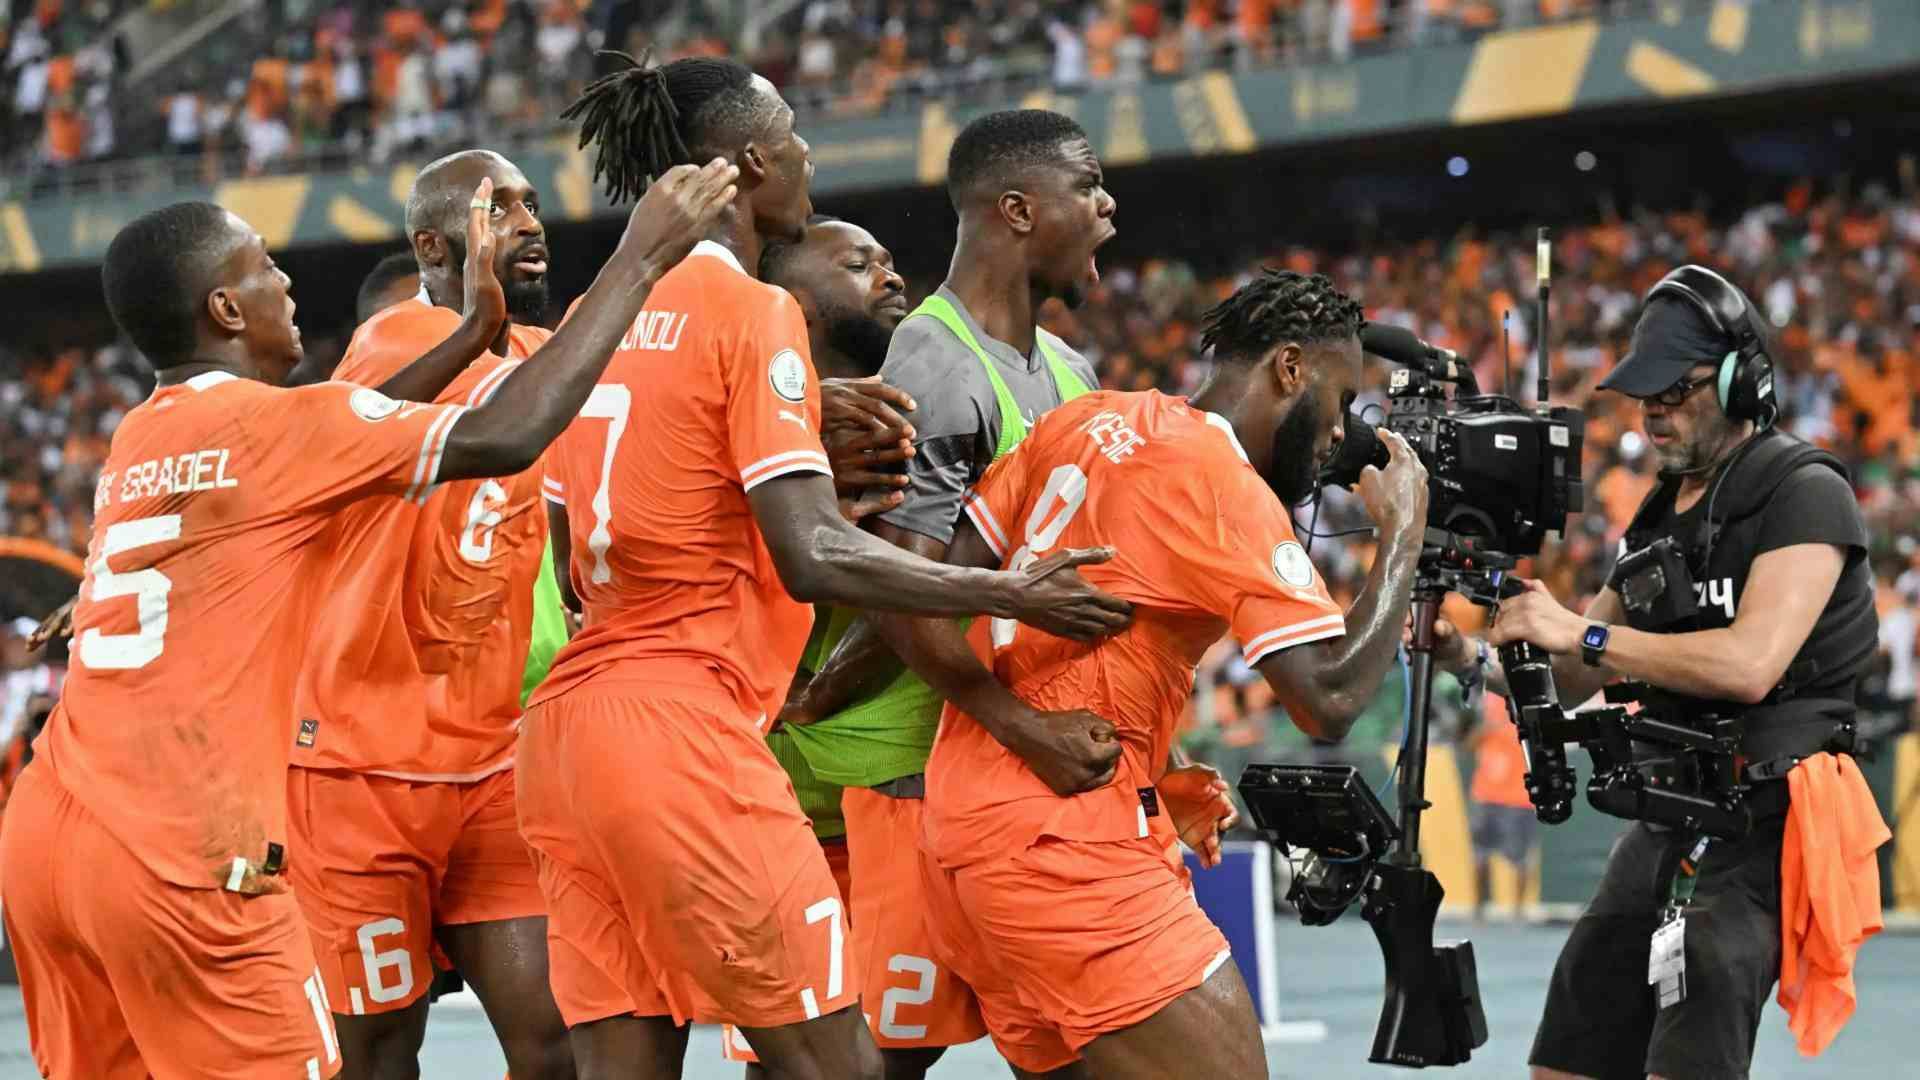 Ville per tutti, il grande regalo ai giocatori della Costa d'Avorio